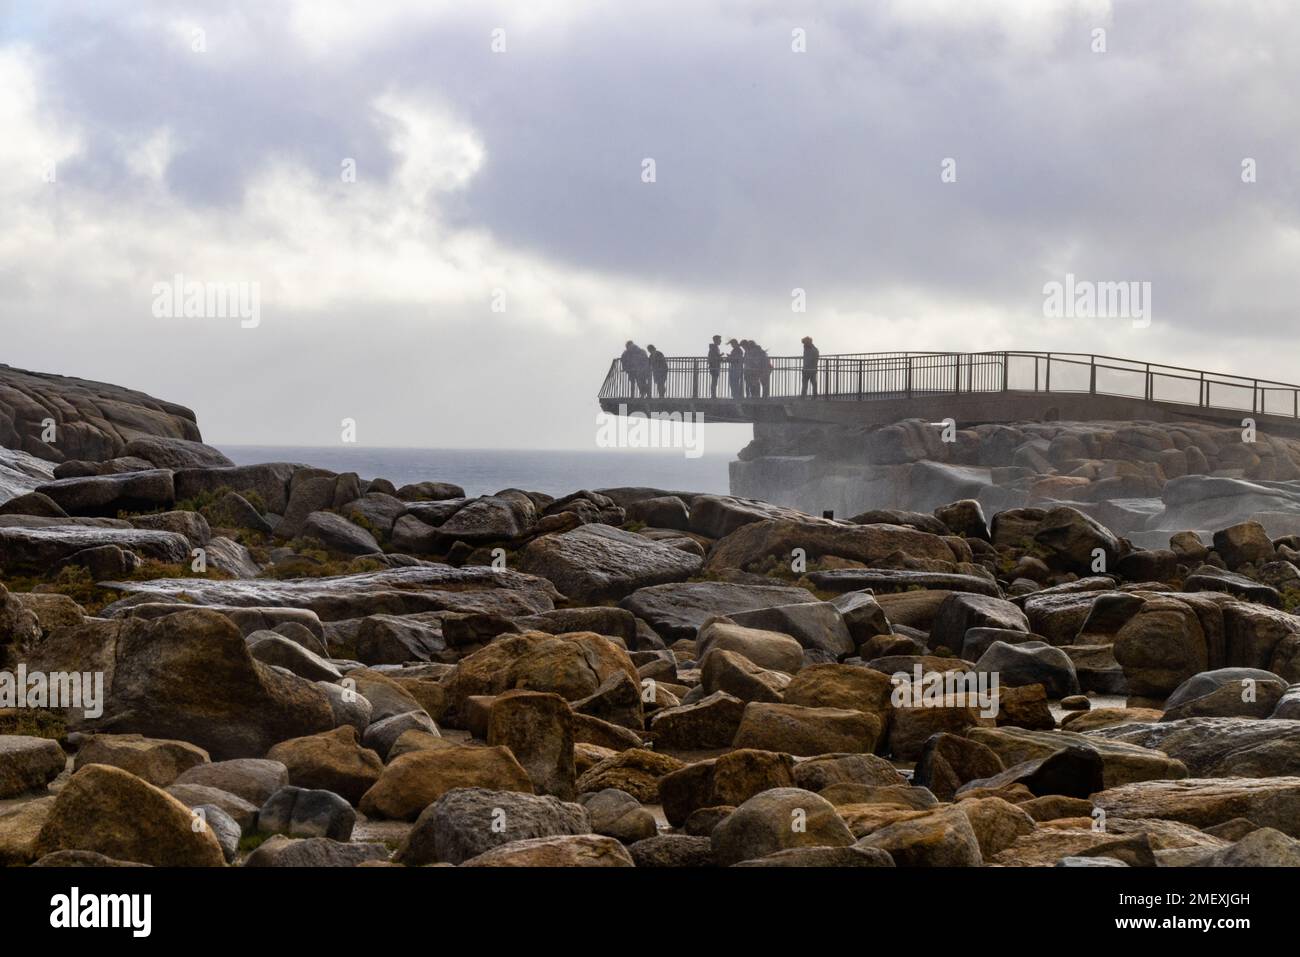 Eine Gruppe von Menschen traut sich kaltem, windigen Wetter, um die Lücke von einer freitragenden Aussichtsplattform zu betrachten, die von Felsen in der Nähe von Albany in Westaustralien unterstützt wird Stockfoto